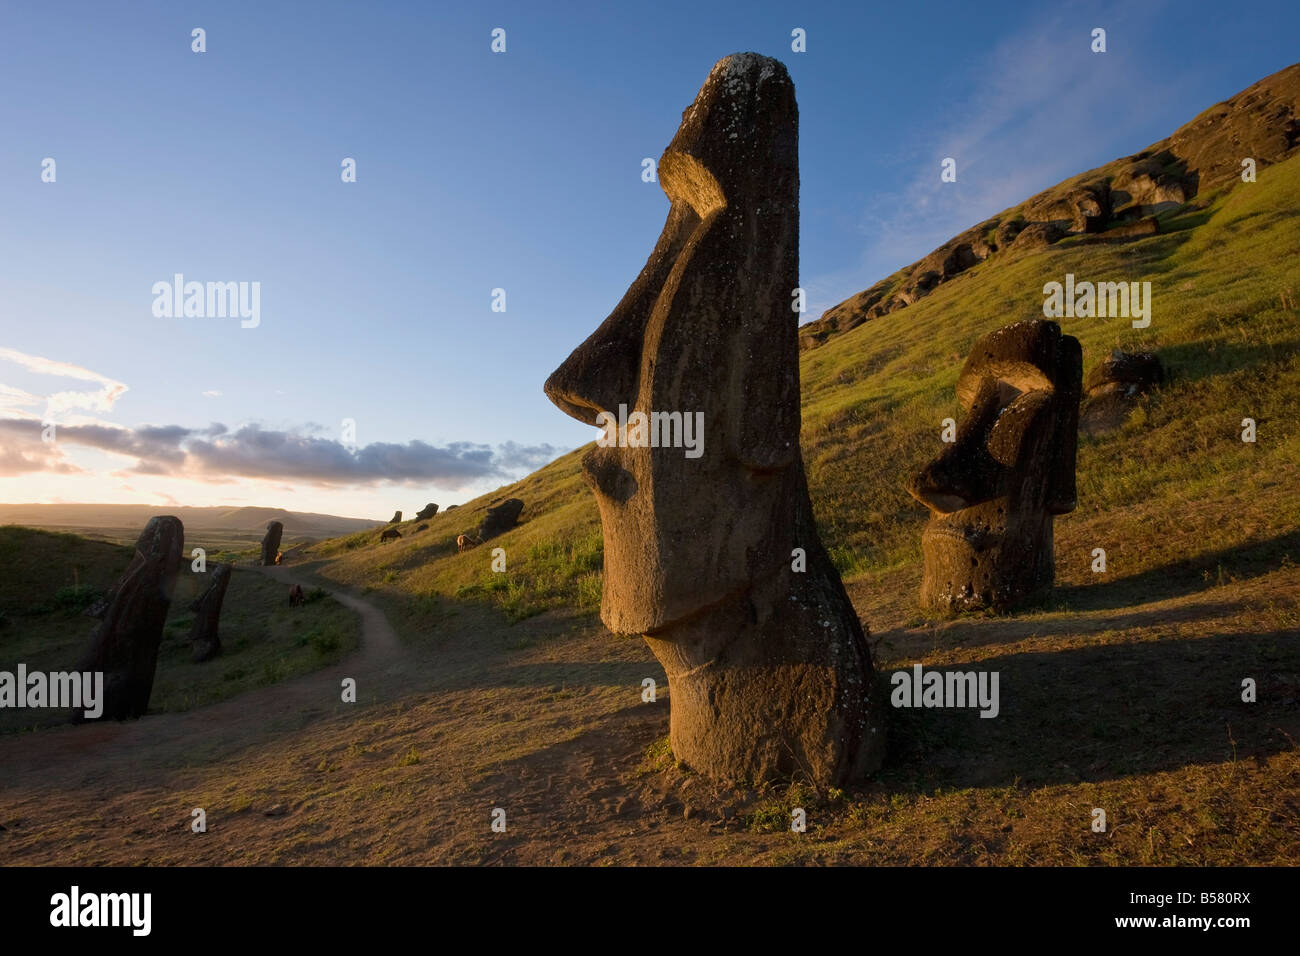 Gigante di pietra monolitica Moai statue a Rano Raraku, Rapa Nui (l'Isola di Pasqua), il Sito Patrimonio Mondiale dell'UNESCO, Cile, Sud America Foto Stock